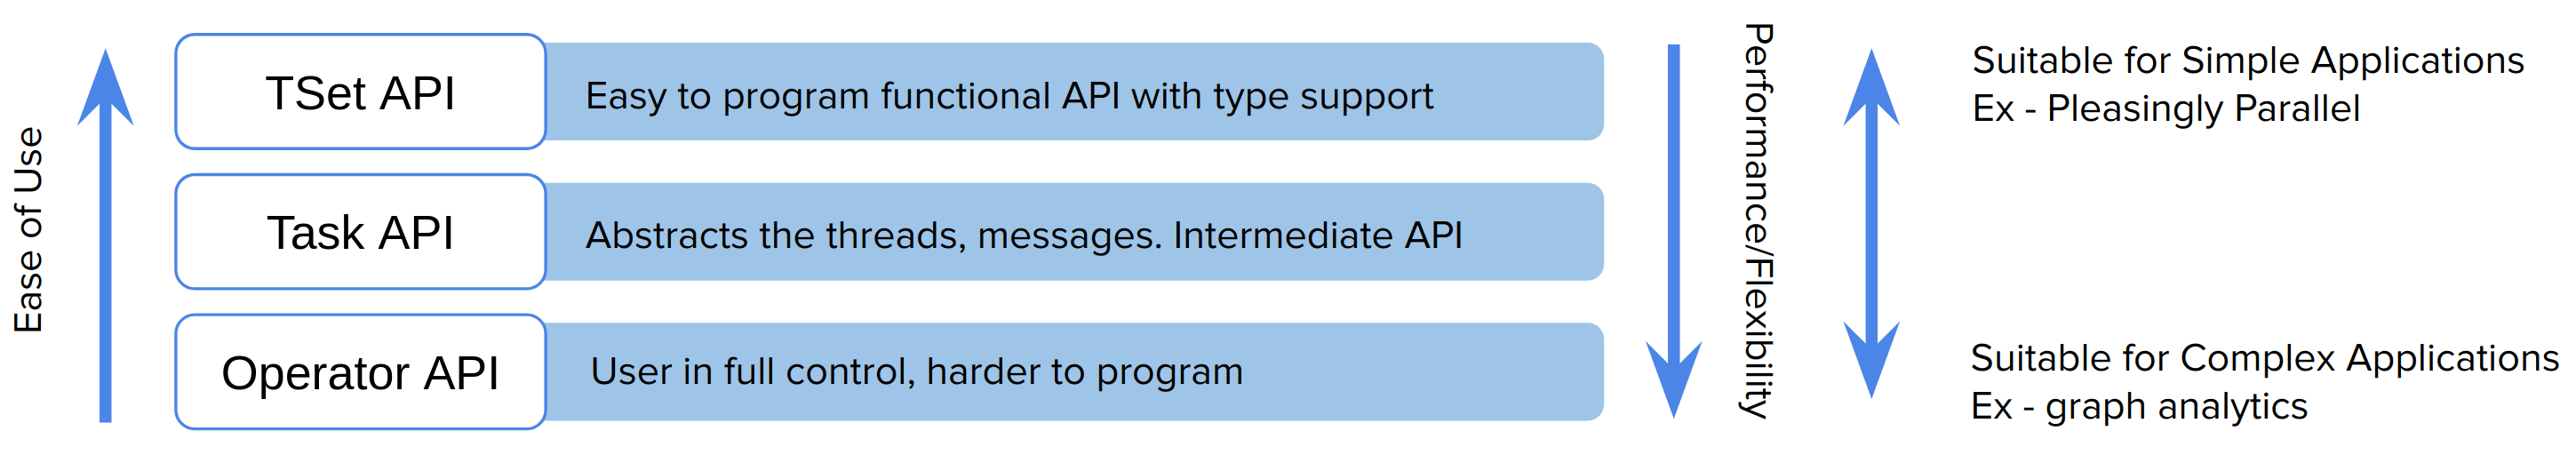 Twister2 API Levels